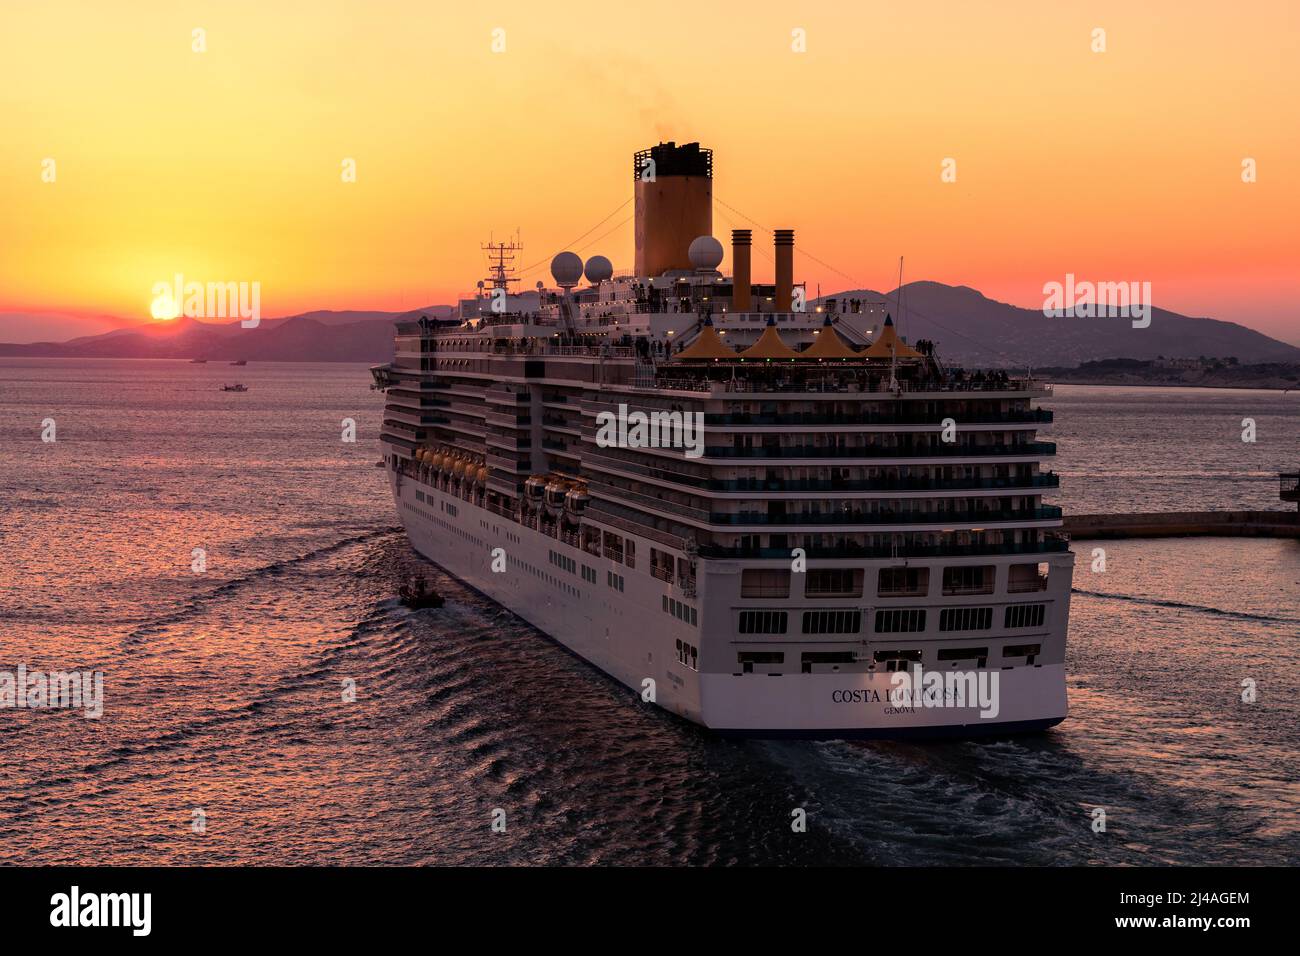 Le bateau de croisière Costa Cruises Costa Luminosa naviguant jusqu'au coucher du soleil depuis le port du Pirée - novembre 2018 Banque D'Images